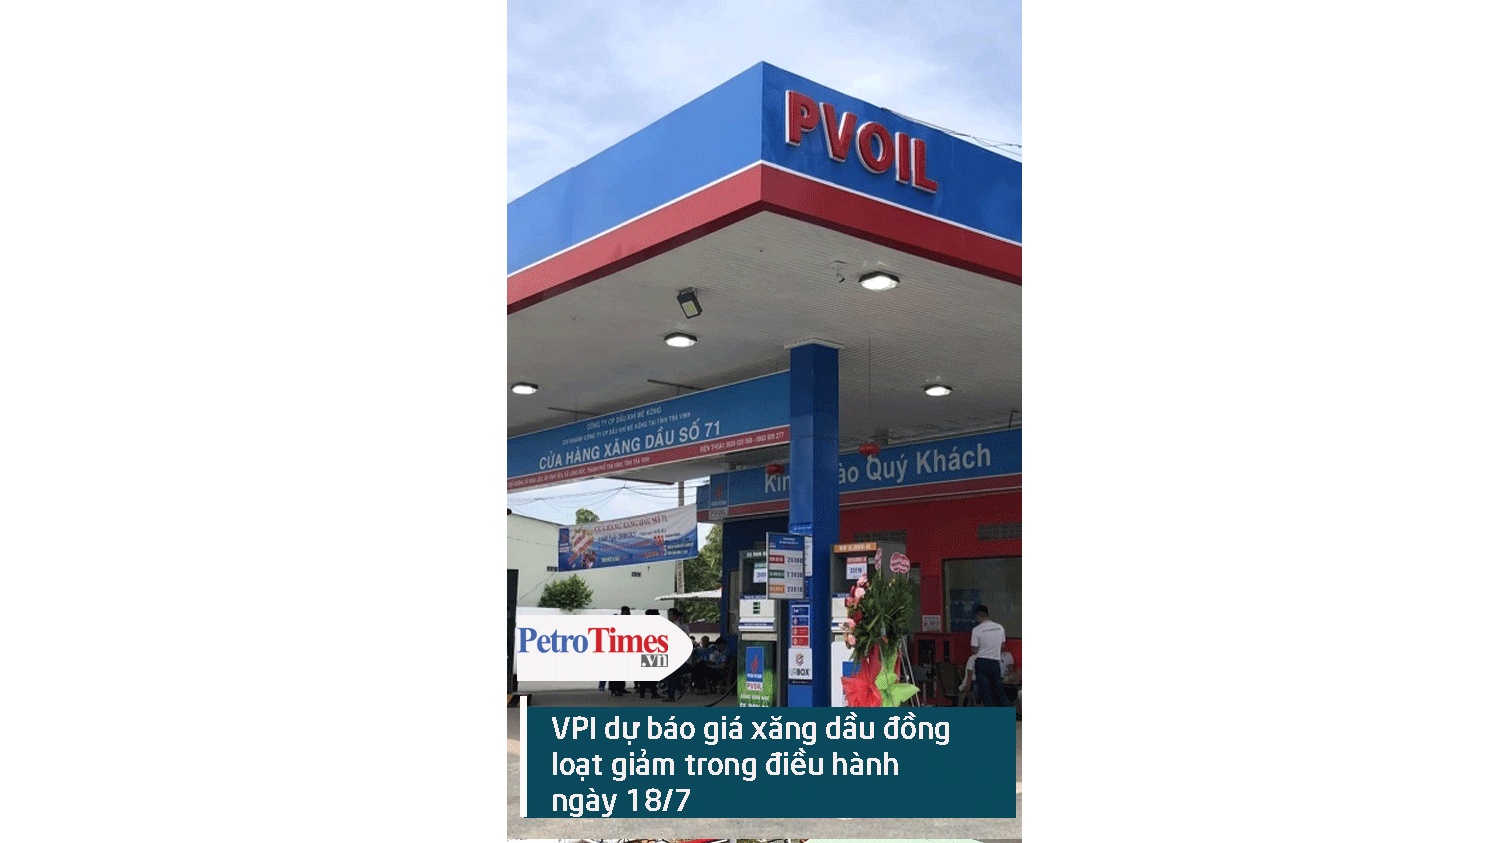 [Video] VPI dự báo giá xăng dầu đồng loạt giảm trong kỳ điều hành ngày 18/7